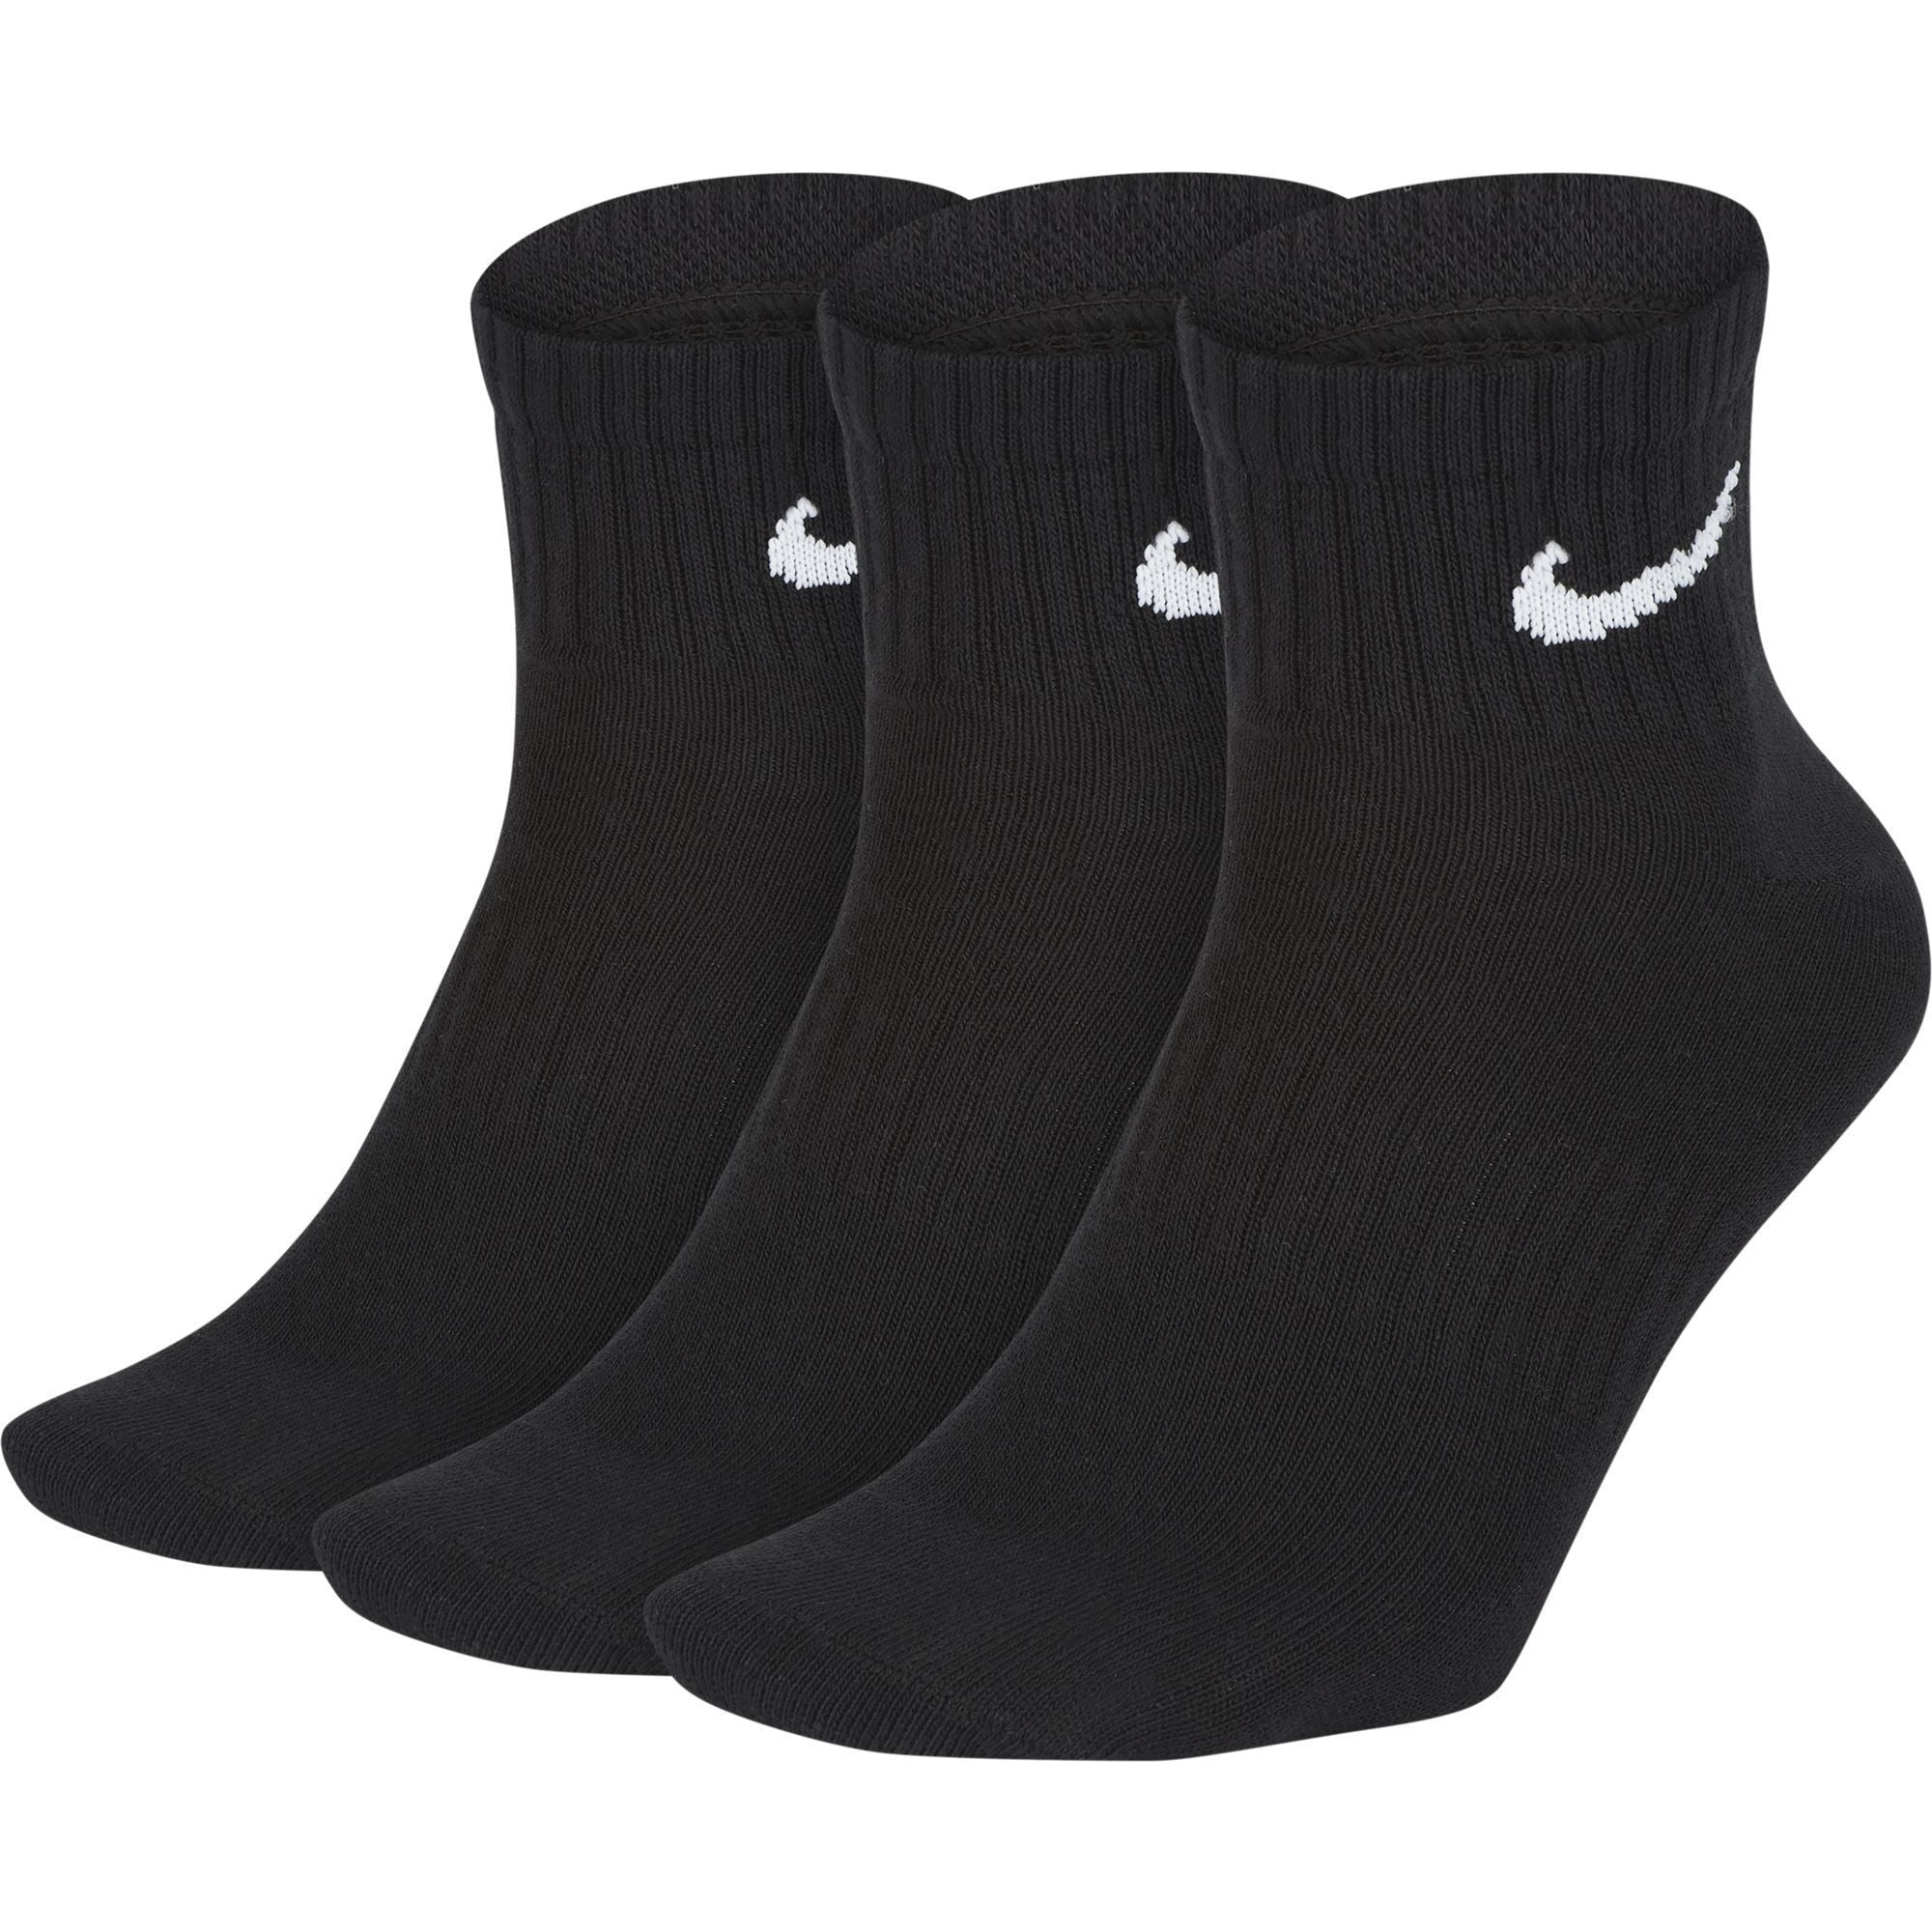 3 Pack Everyday Lighweight Ankle Socks